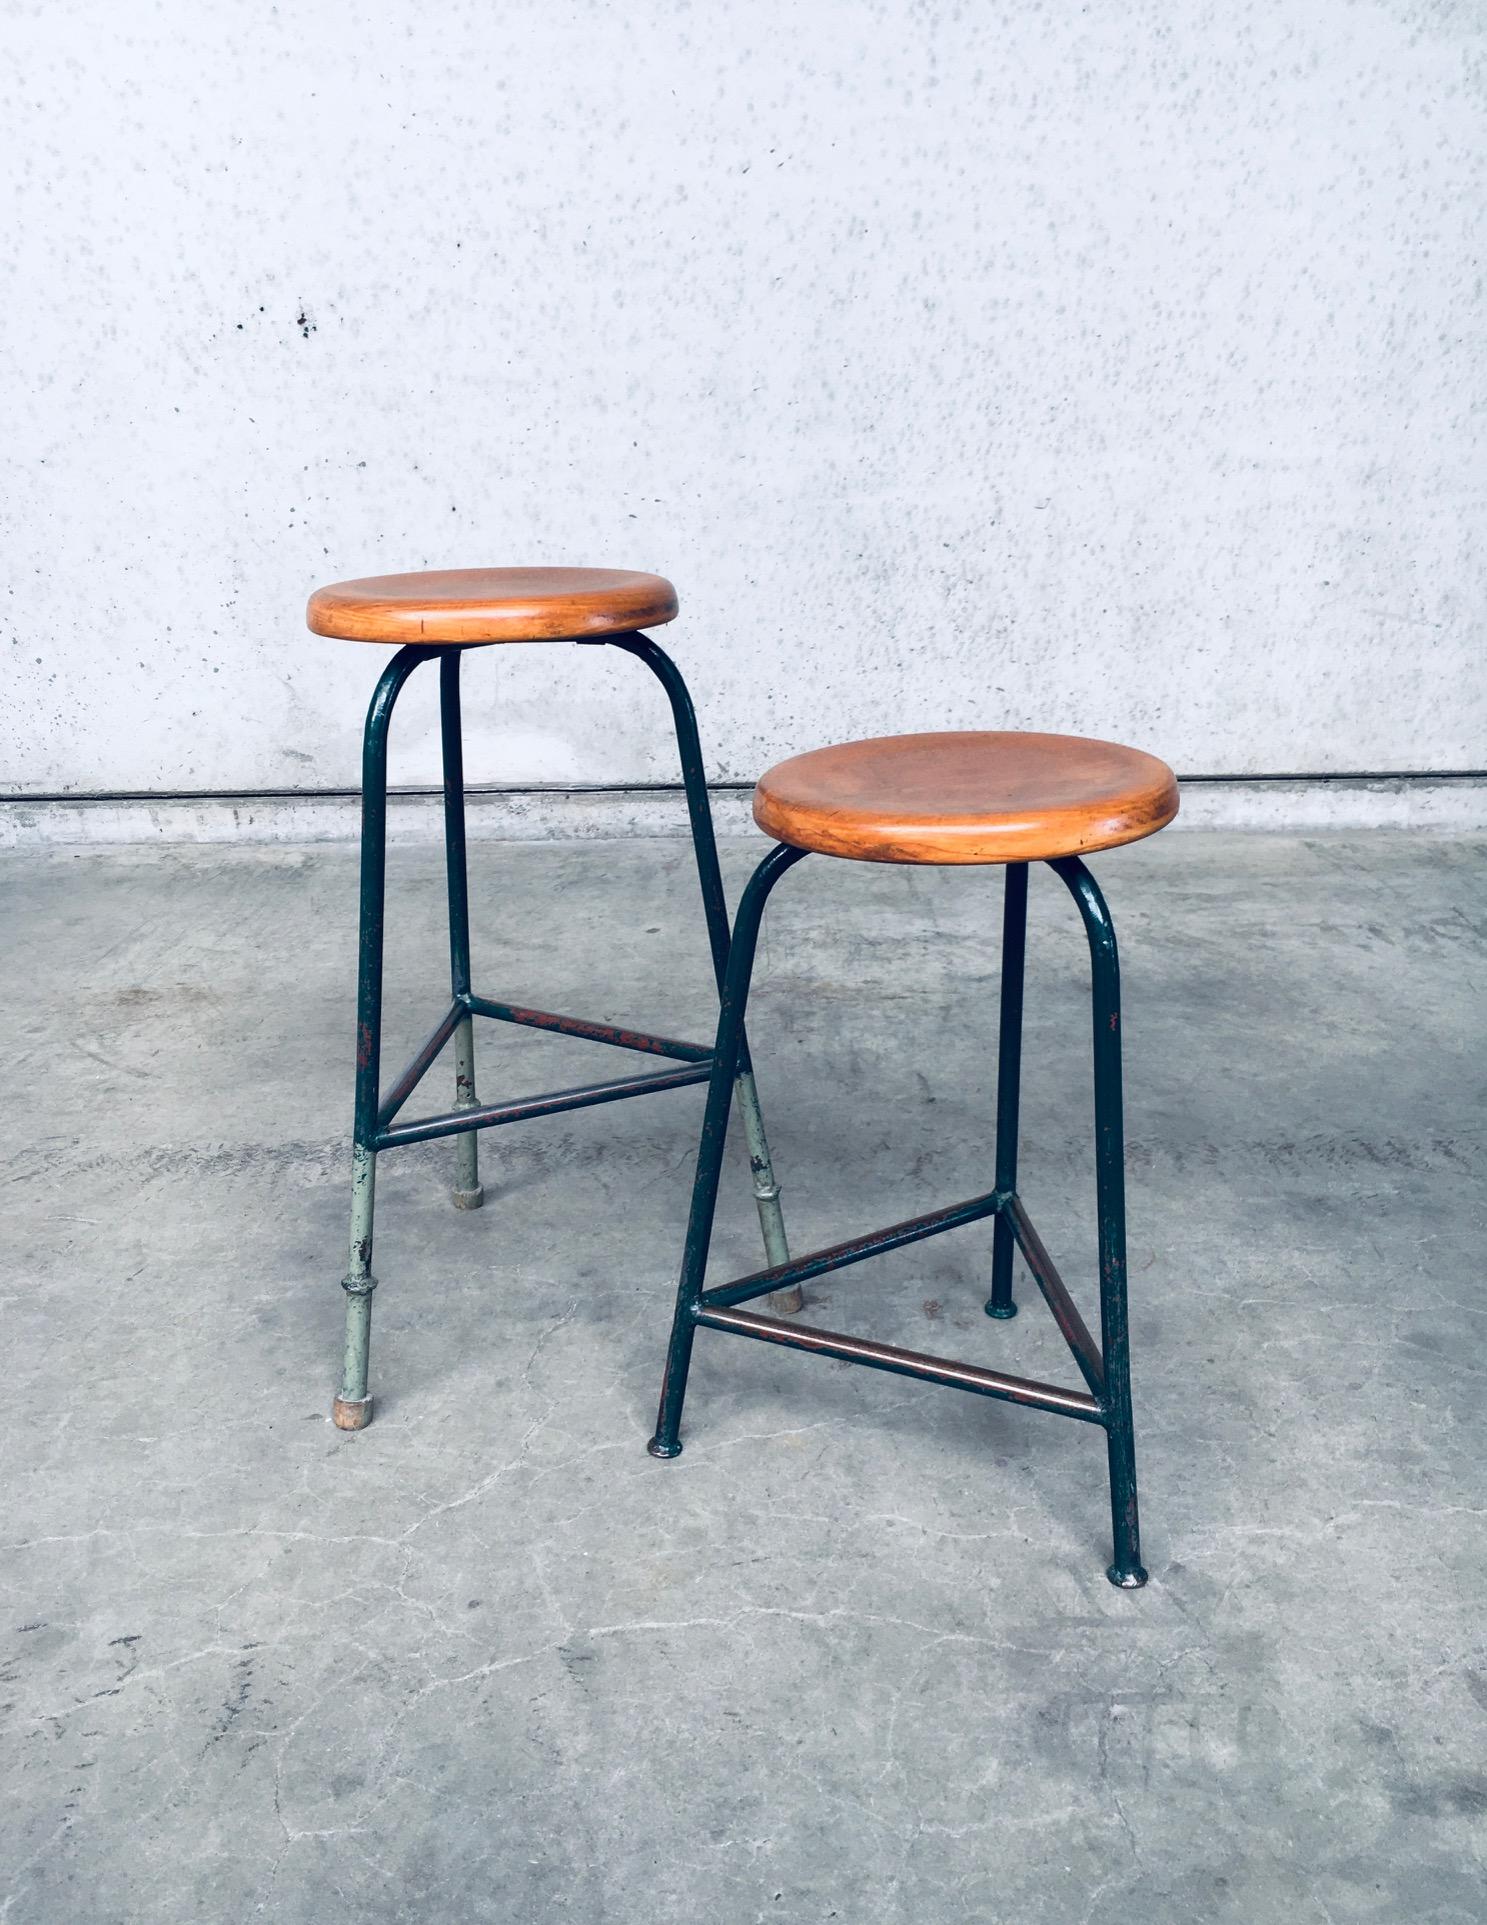 Vintage Industrial Design Dreibeinhocker Set. Hergestellt in Belgien, aus den 1950er Jahren. Dreibeiniges Gestell aus grün lackiertem Stahl mit runder Sitzfläche aus Buchenholz. Ein Hocker wurde zu einer höheren Sitzfläche umgebaut, was Sie an der